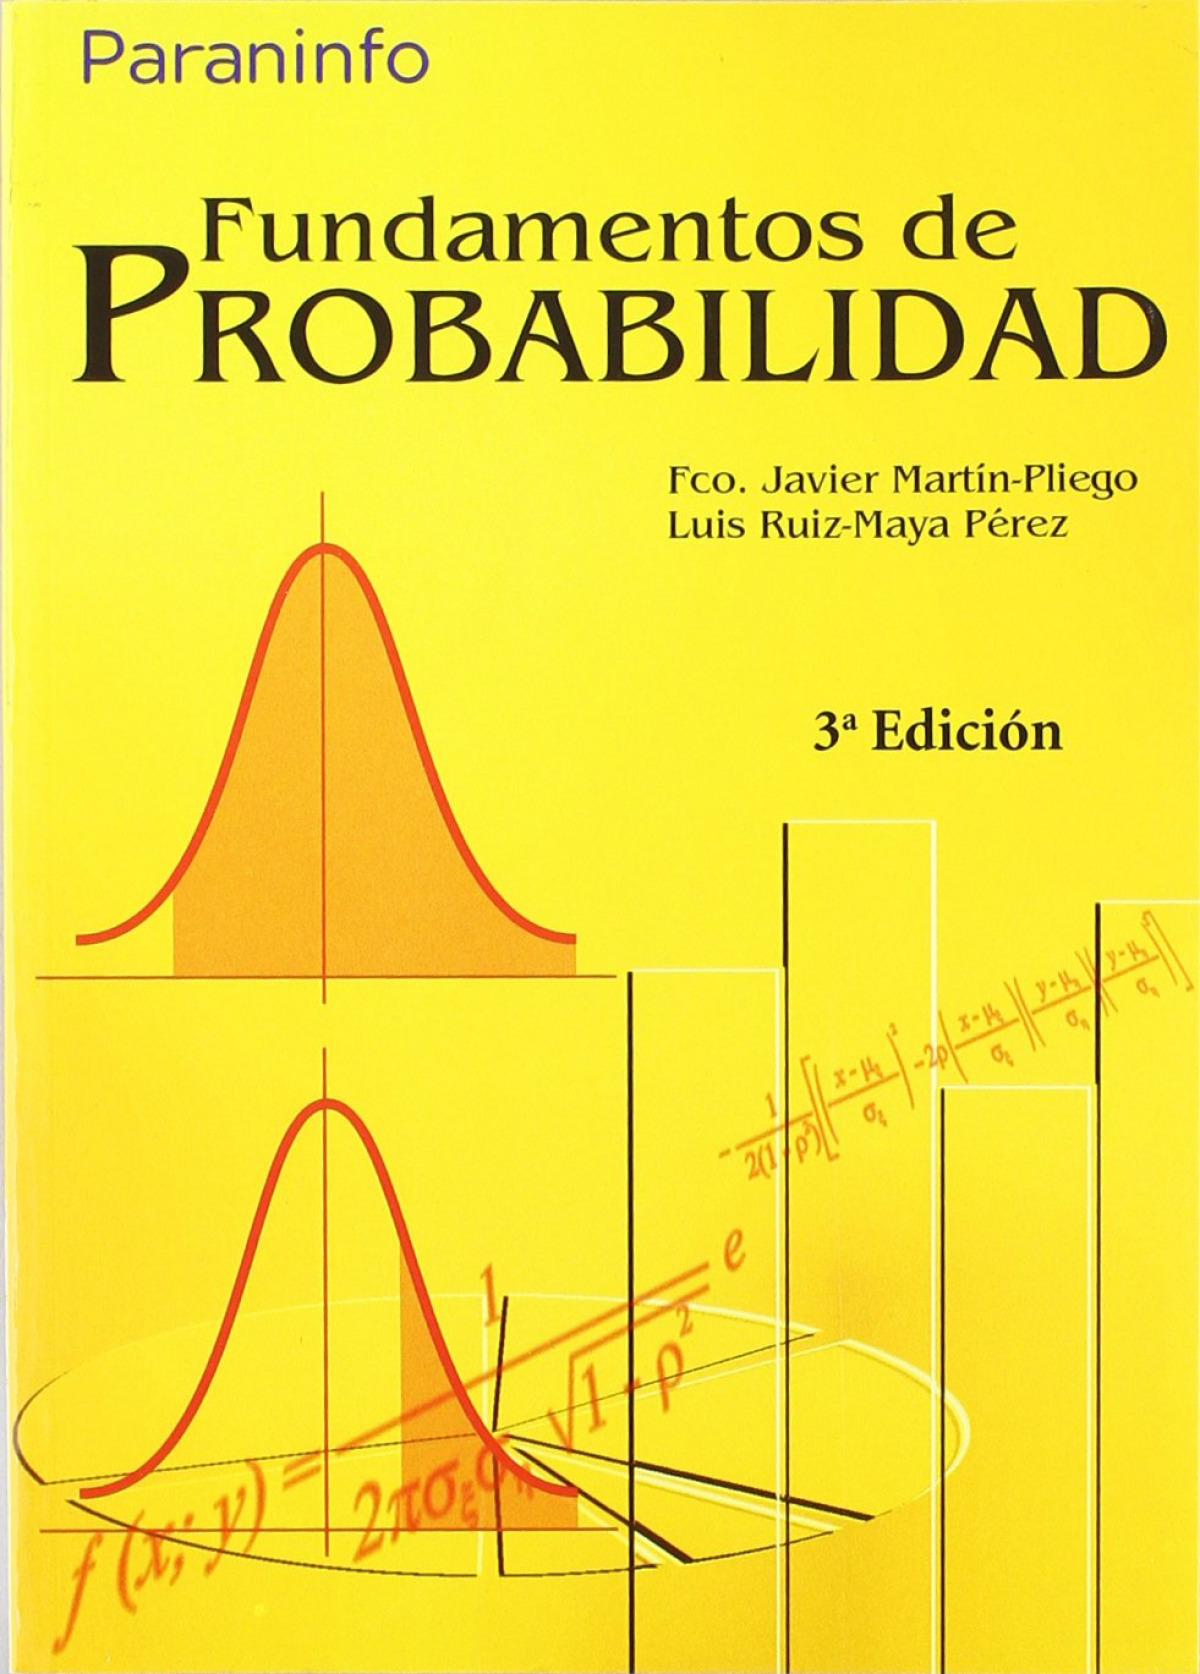 Fundamentos de Probabilidad 3ª Edición - UNED - MartÍn Pliego, Francisco Javier